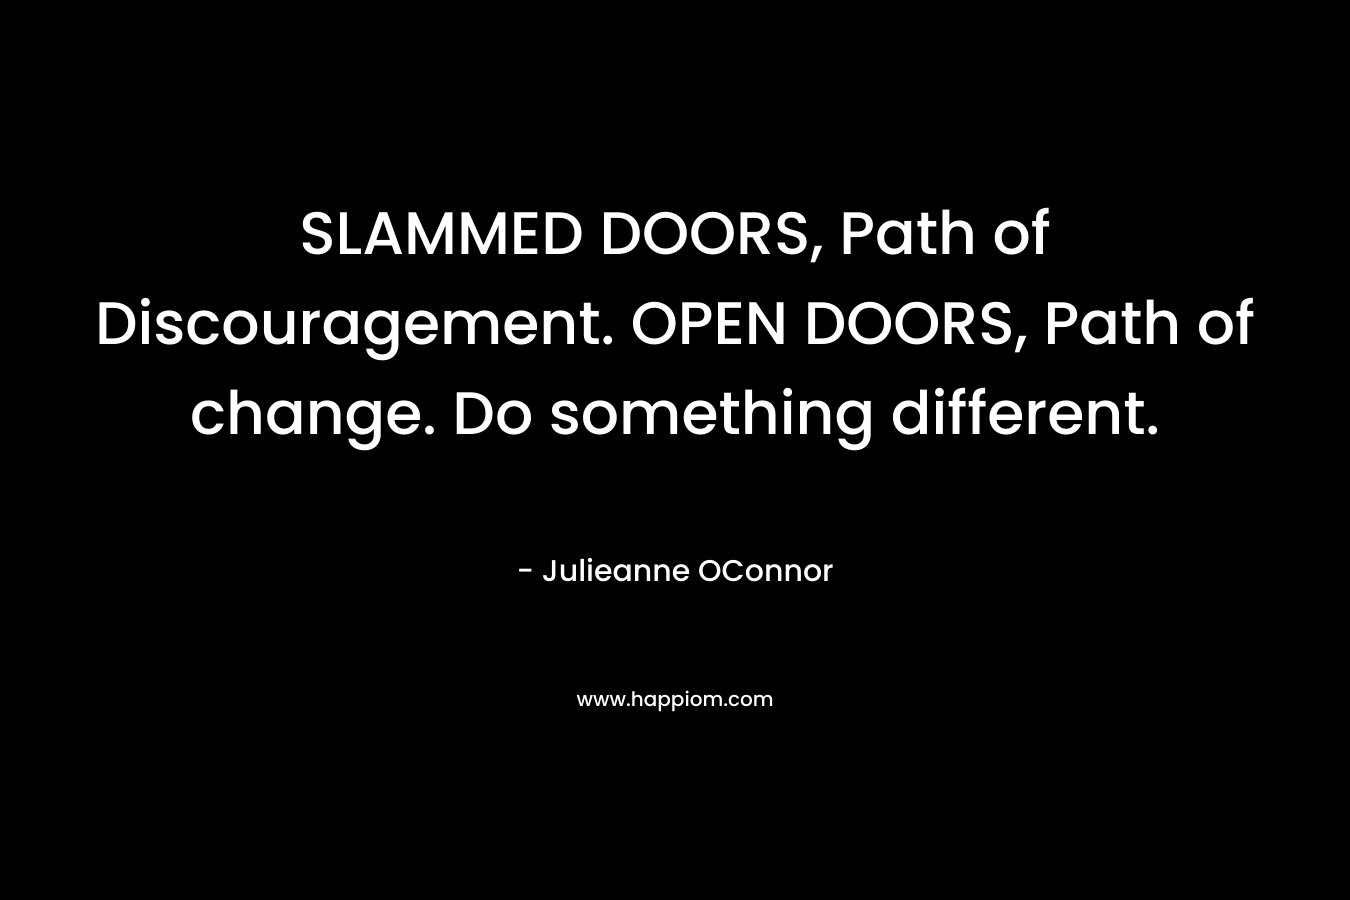 SLAMMED DOORS, Path of Discouragement. OPEN DOORS, Path of change. Do something different.